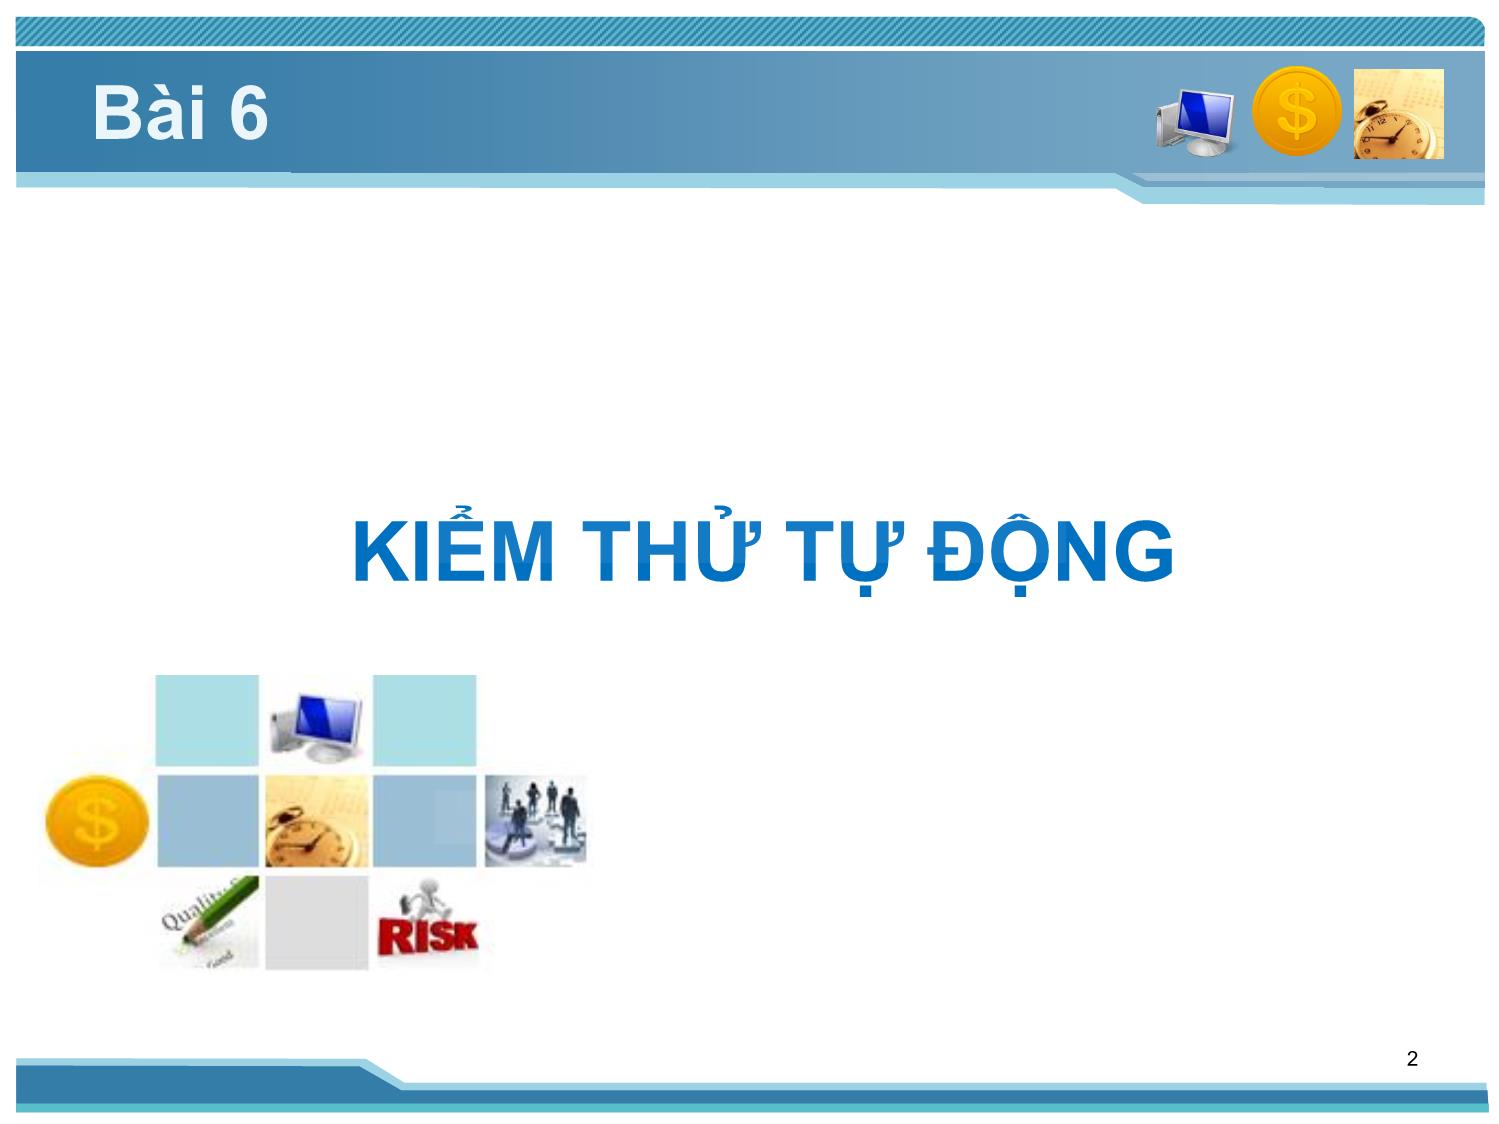 Bài giảng Kiểm thử phần mềm - Bài 6: Kiểm thử tự động - Nguyễn Thị Thanh Trúc trang 2